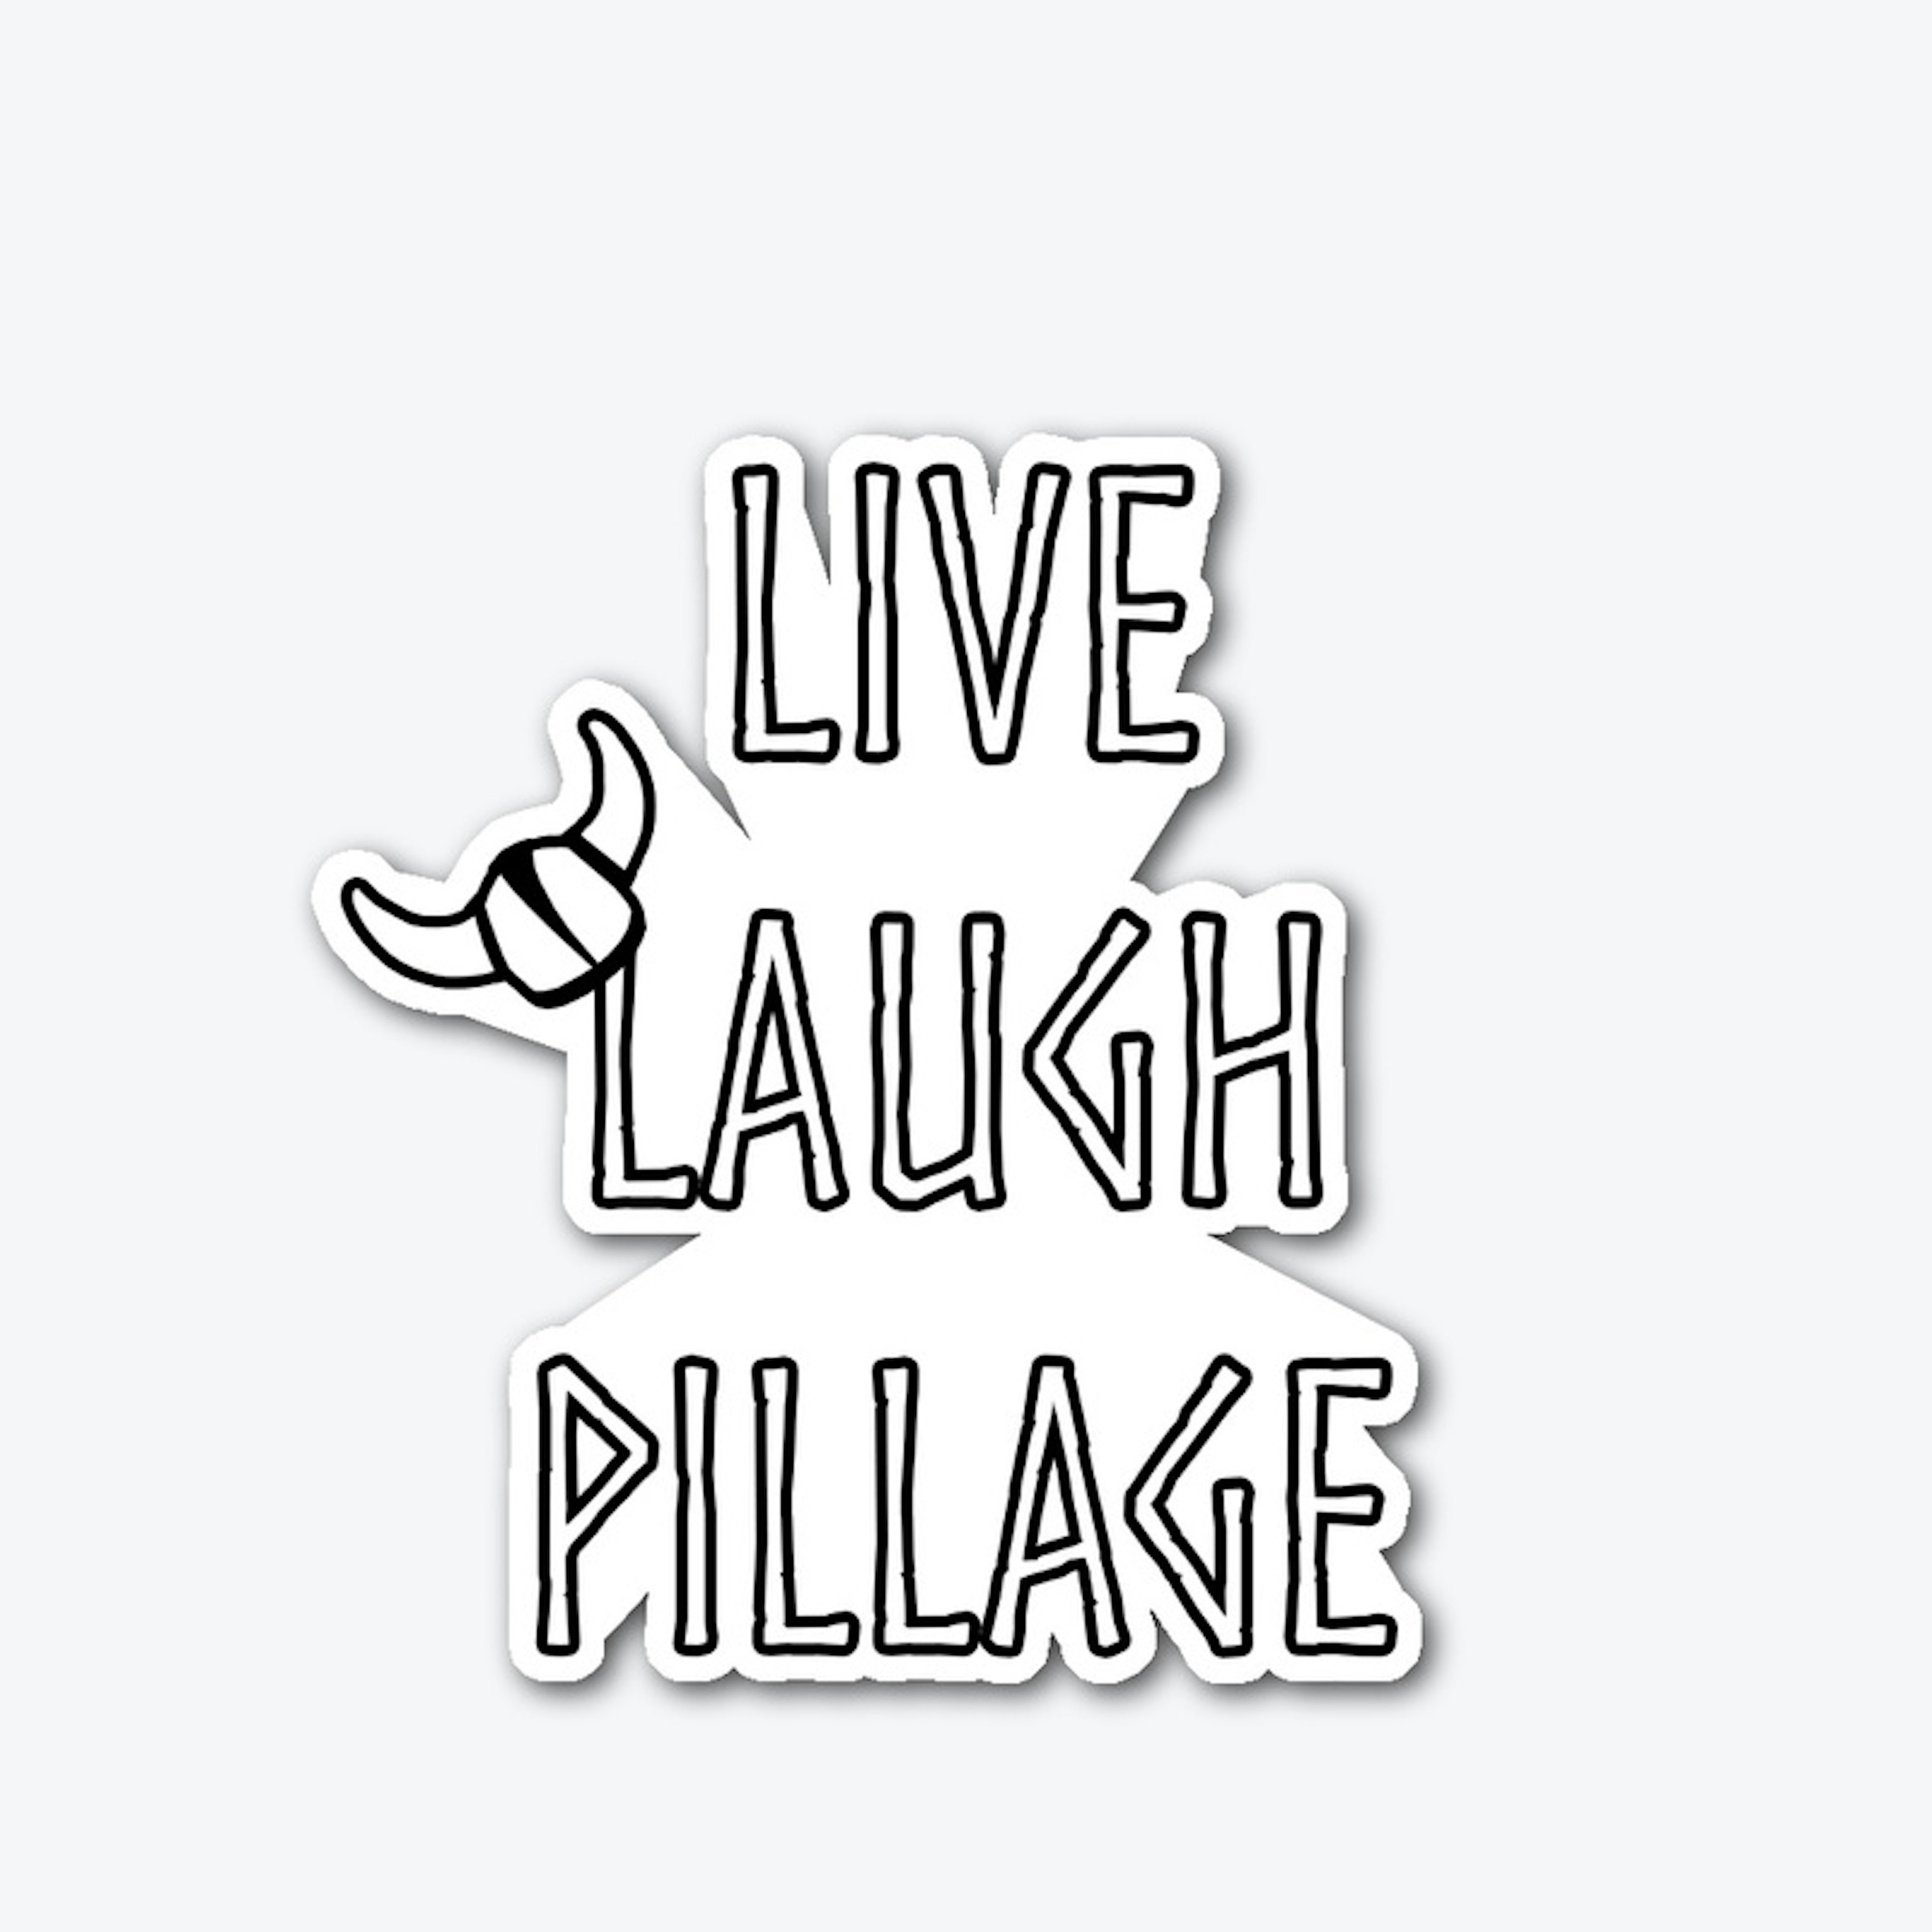 Live, Laugh, Pillage